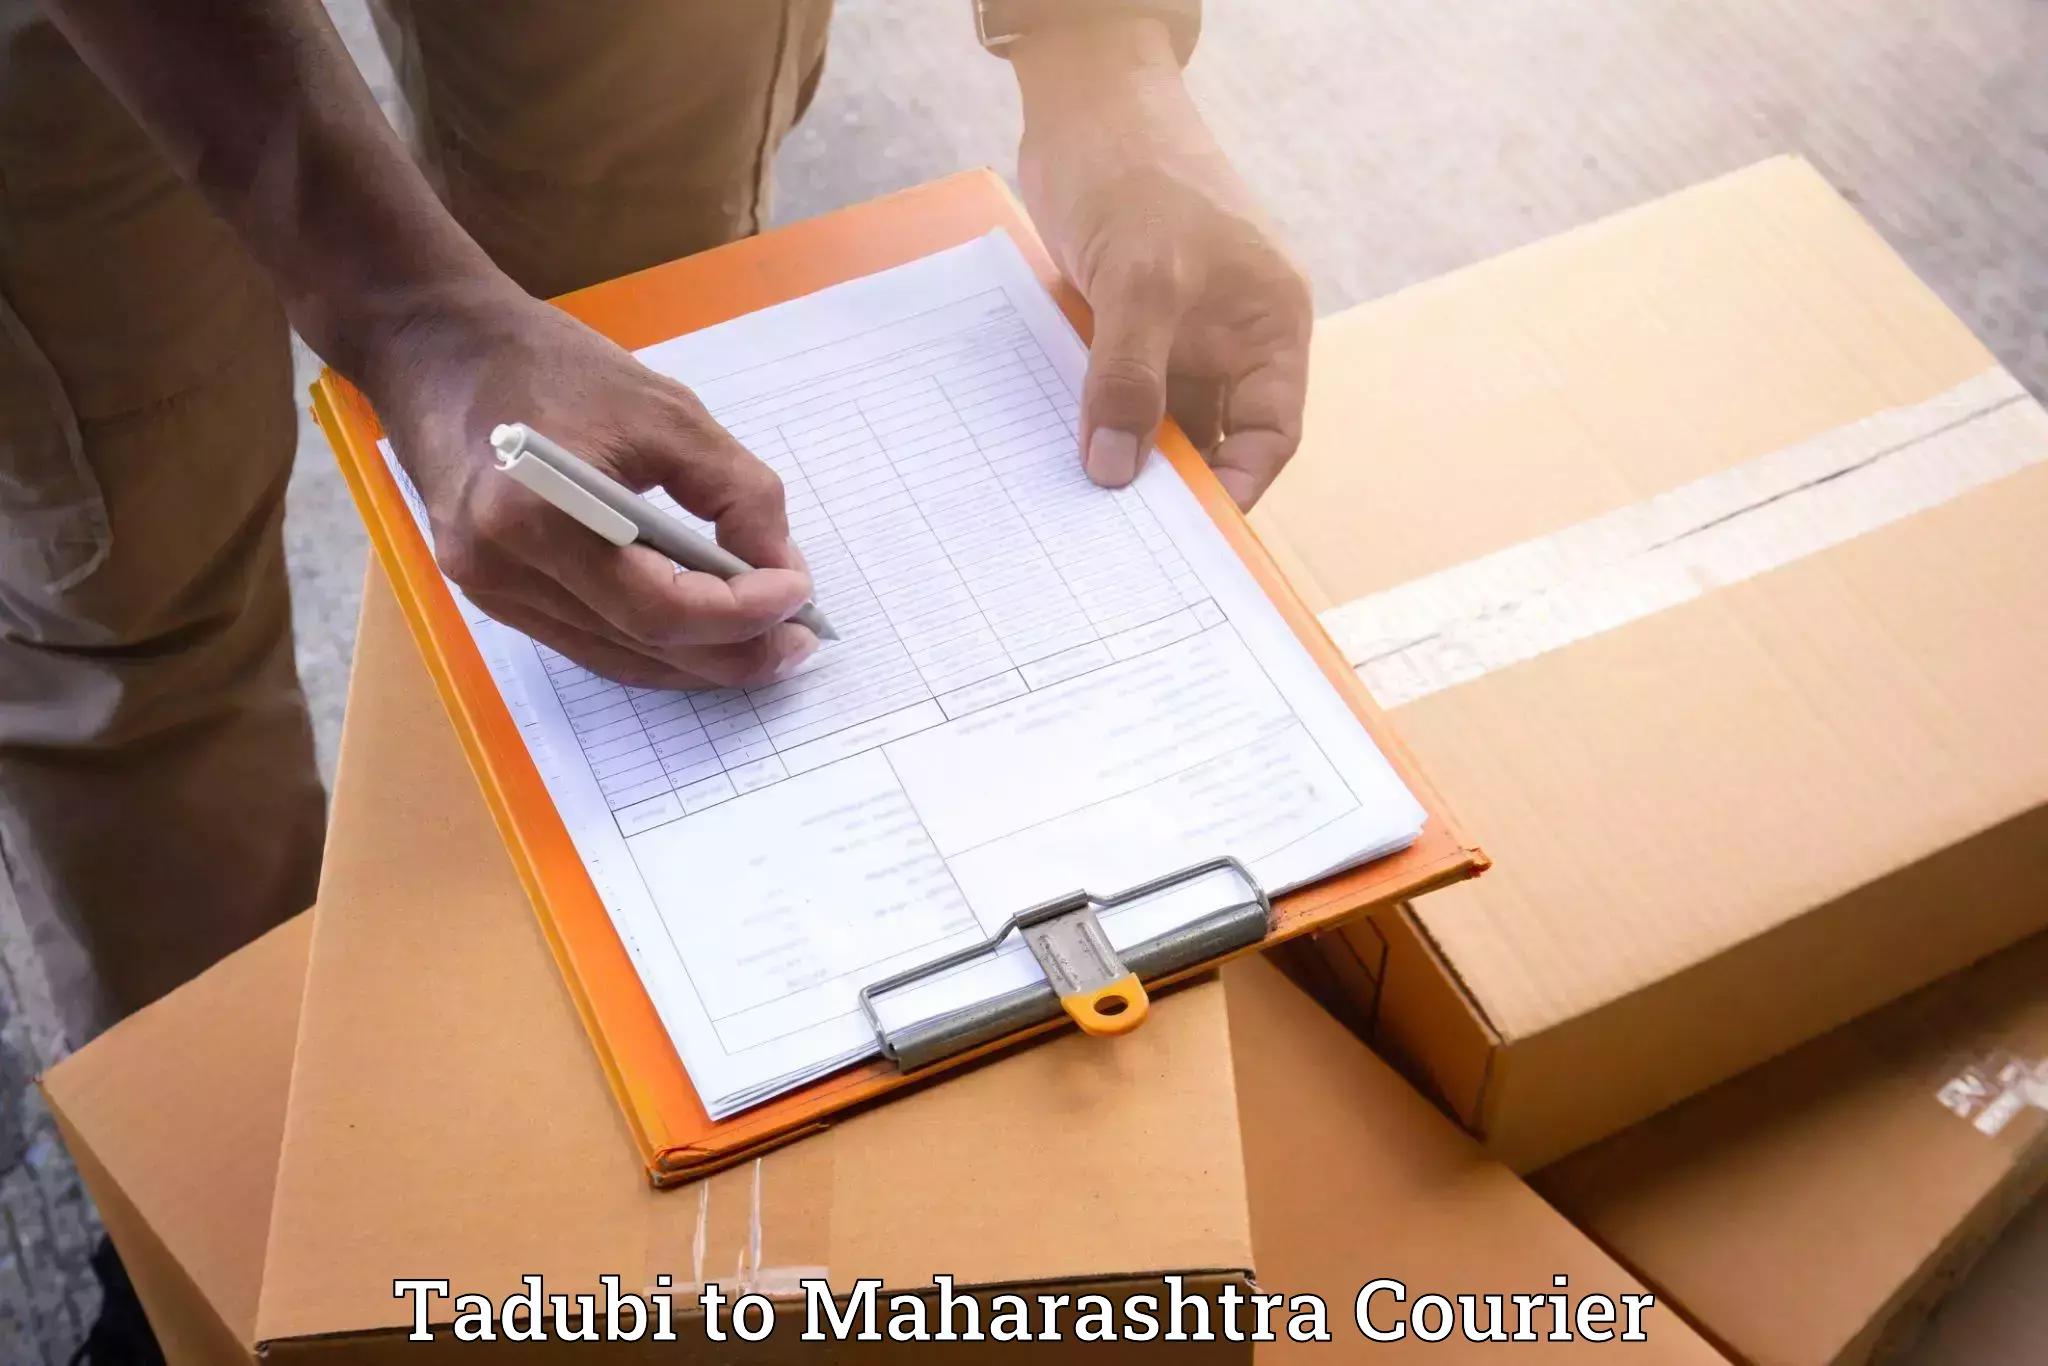 Full-service relocation Tadubi to Maharashtra